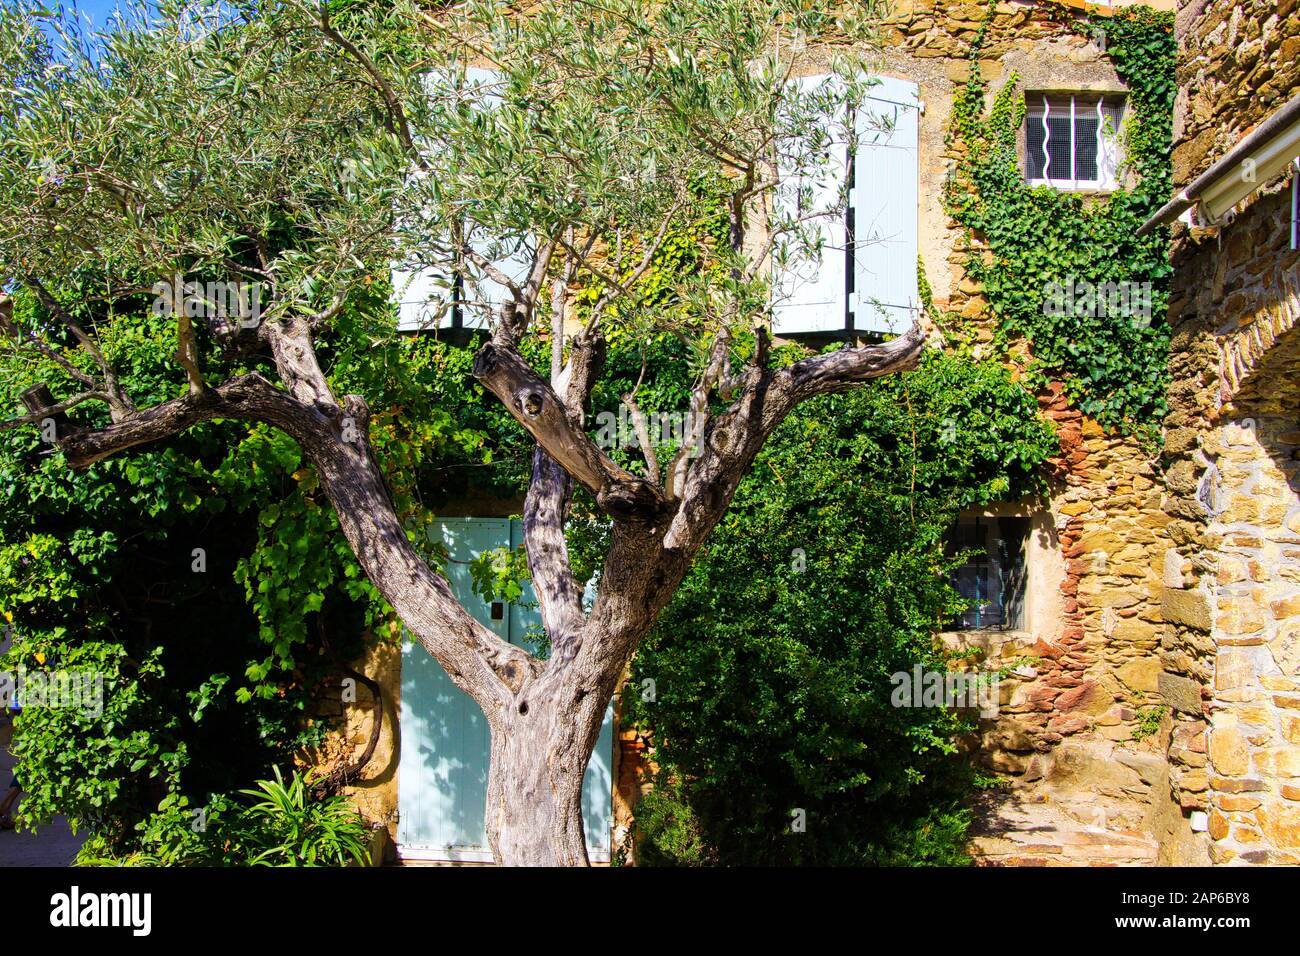 Vue au-delà de la couronne de l'olivier sur la façade d'une maison en pierre typiquement française de la méditerranée recouverte d'ivy avec volets de fenêtre blanche dans le su naturel brillant Banque D'Images